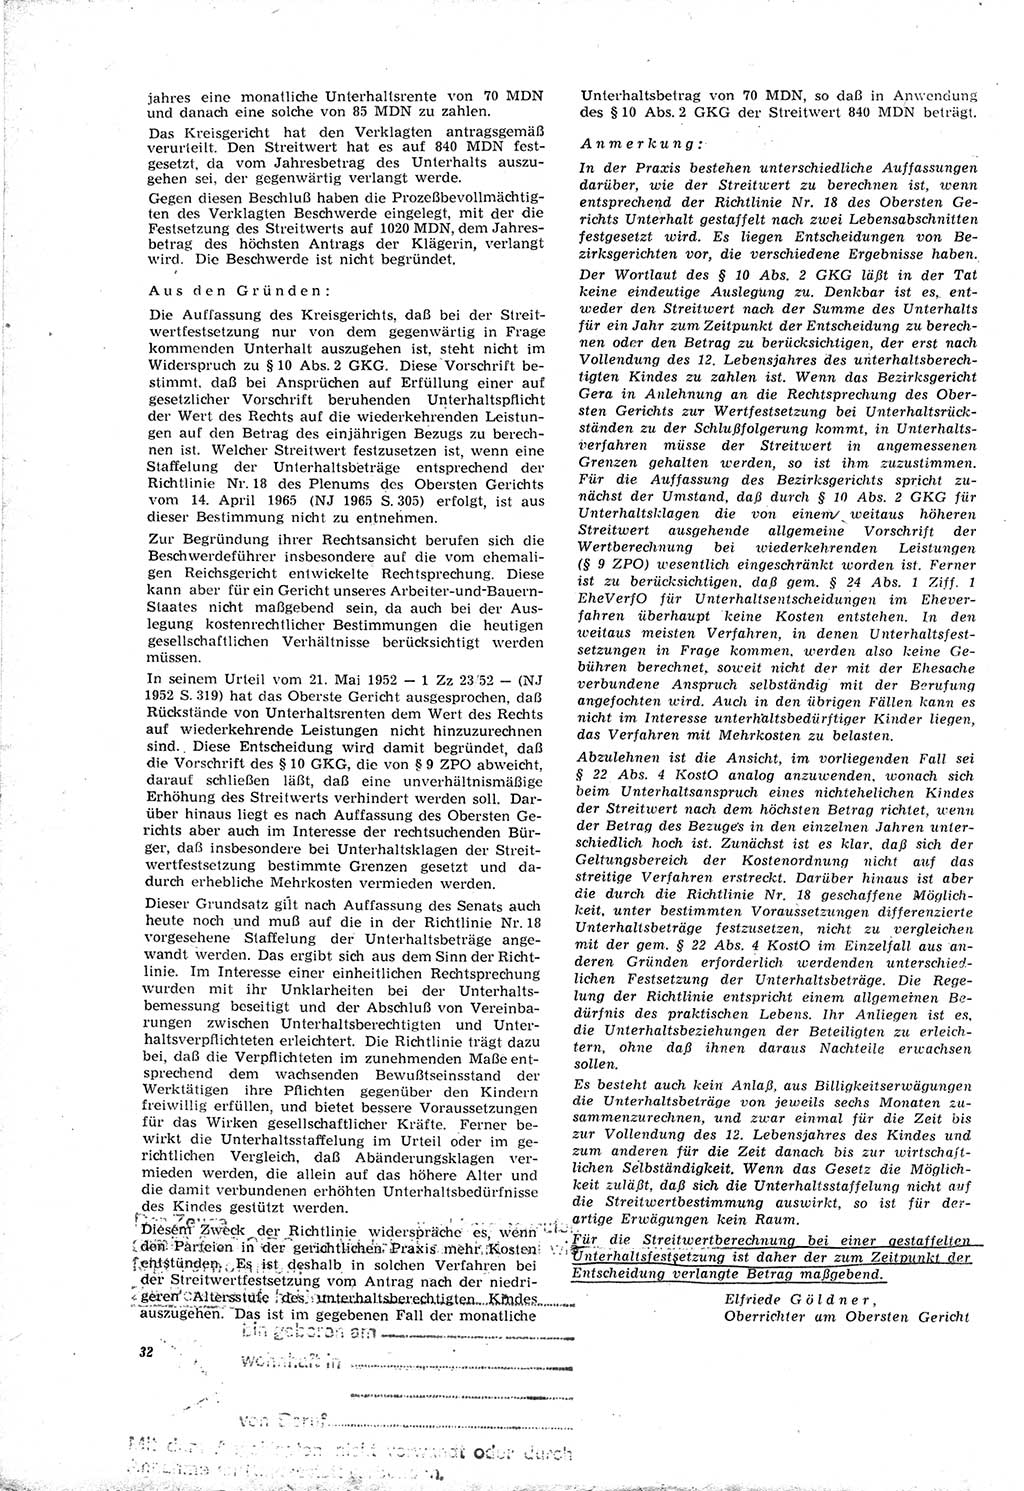 Neue Justiz (NJ), Zeitschrift für Recht und Rechtswissenschaft [Deutsche Demokratische Republik (DDR)], 20. Jahrgang 1966, Seite 32 (NJ DDR 1966, S. 32)